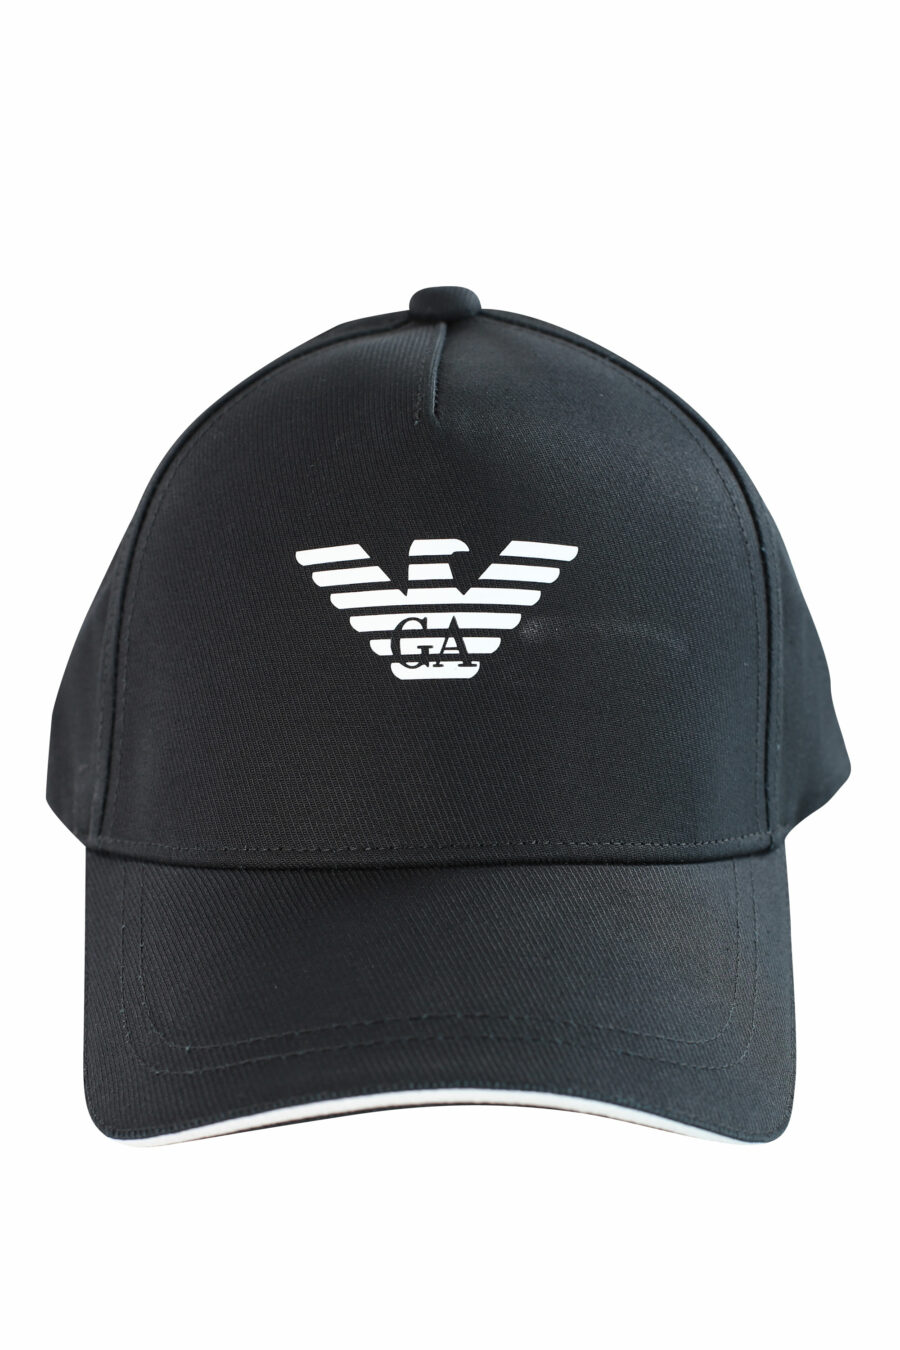 Schwarze Mütze mit weißem Adler-Logo - IMG 3717